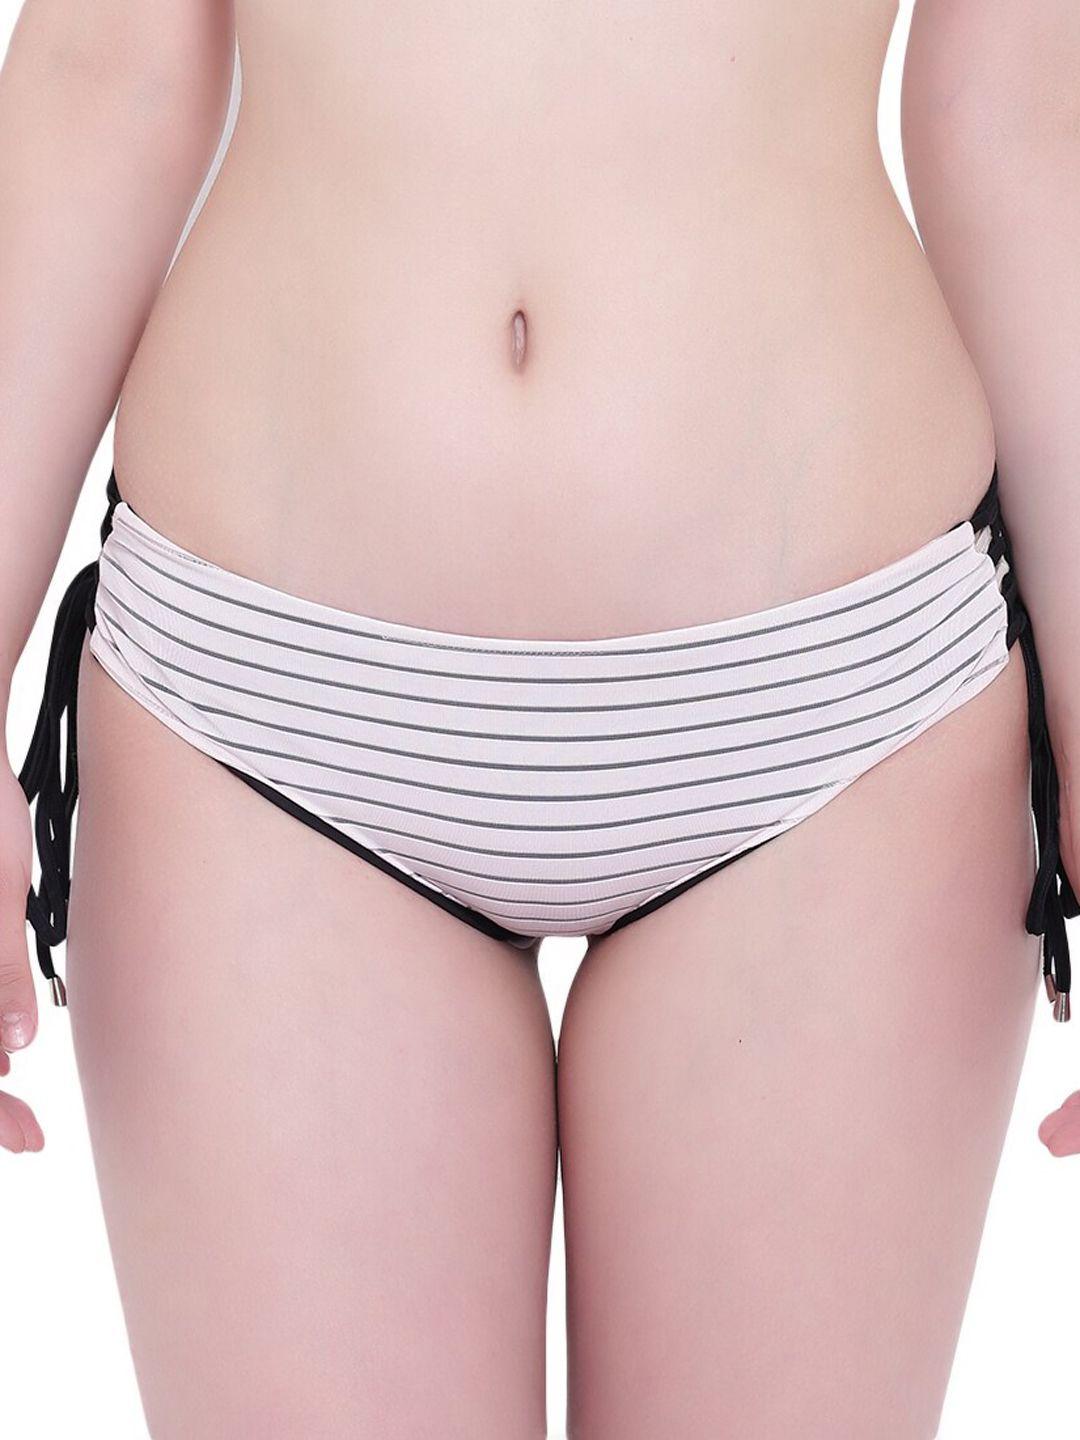 la intimo women black & white striped bikini briefs